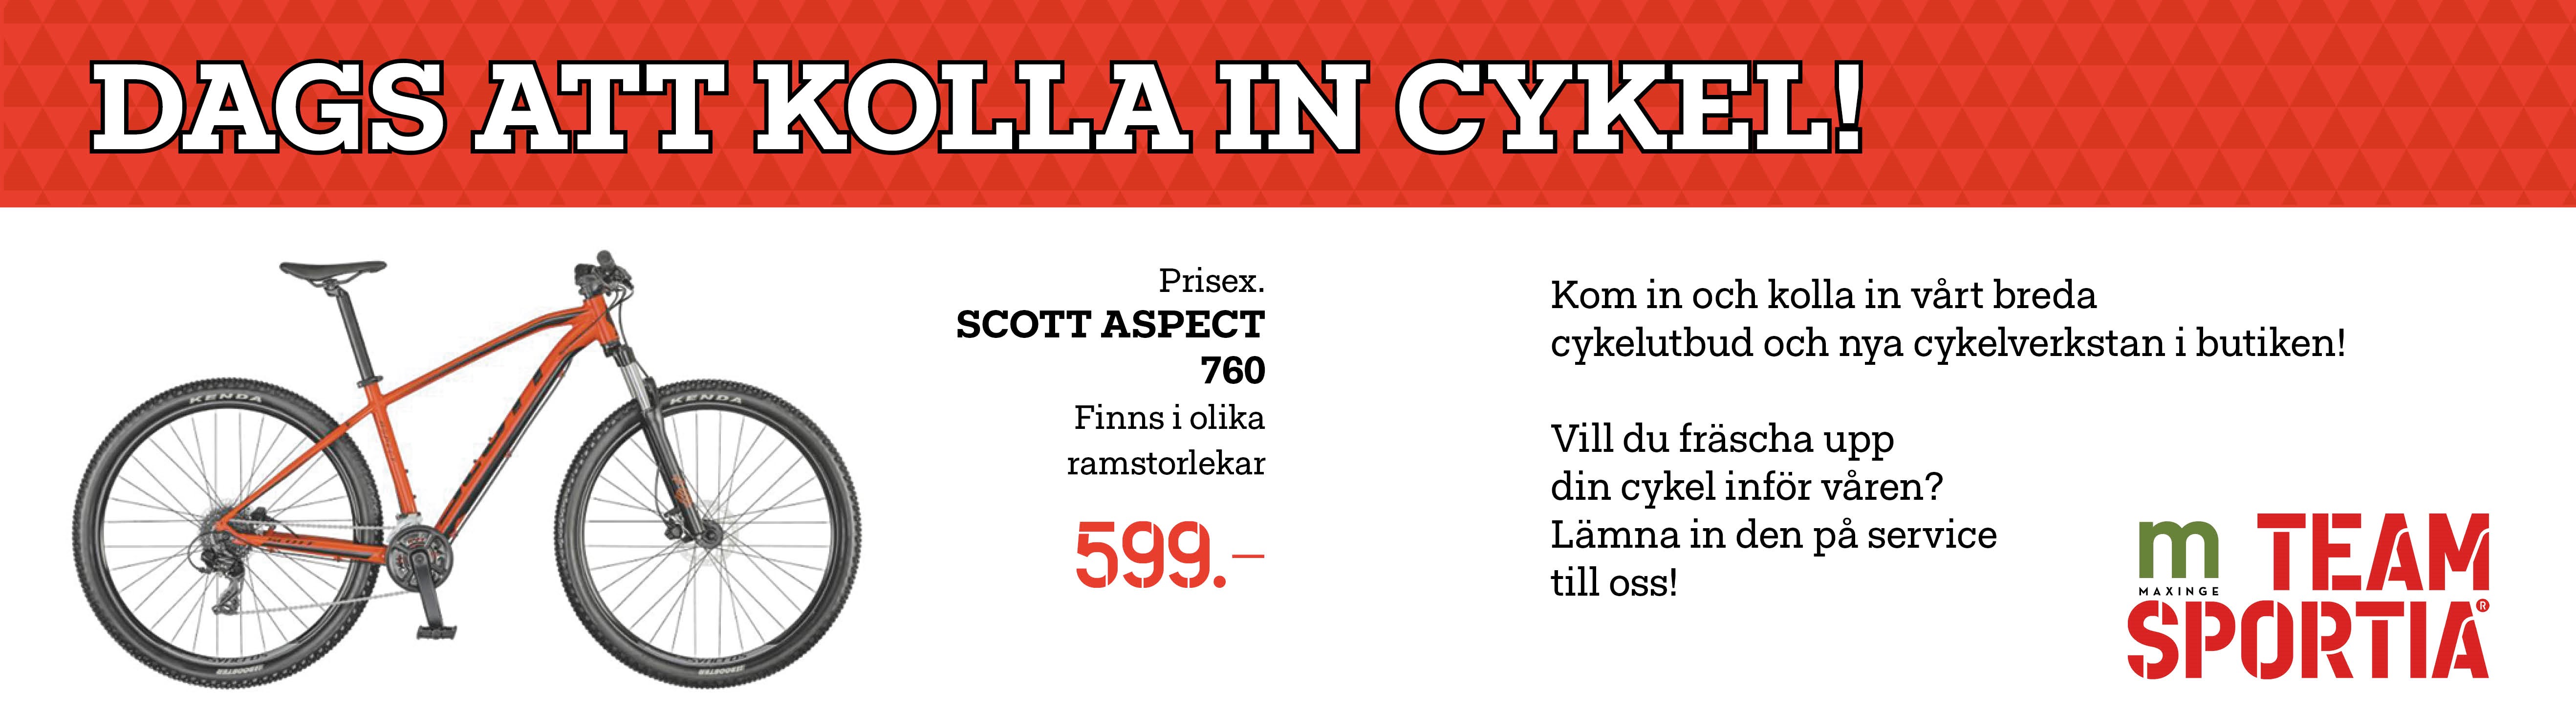 Erbjudande från Team Sportia. Scott Aspect 760 cyckel för endast 599 €.